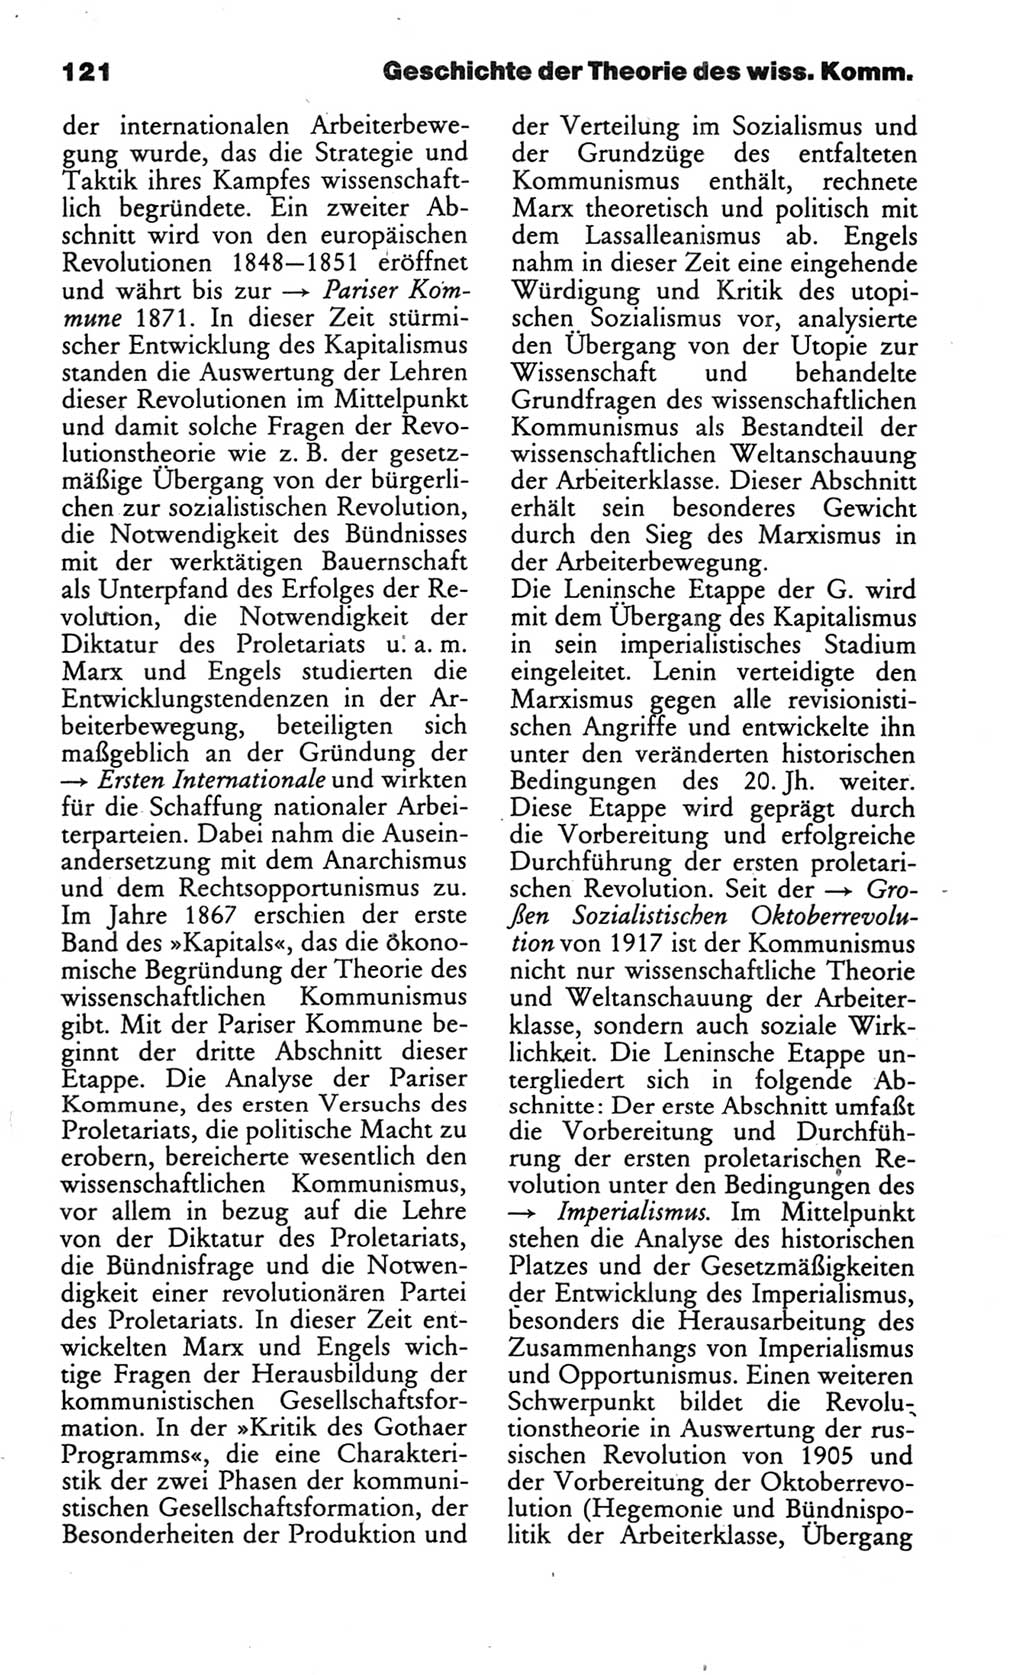 Wörterbuch des wissenschaftlichen Kommunismus [Deutsche Demokratische Republik (DDR)] 1986, Seite 121 (Wb. wiss. Komm. DDR 1986, S. 121)